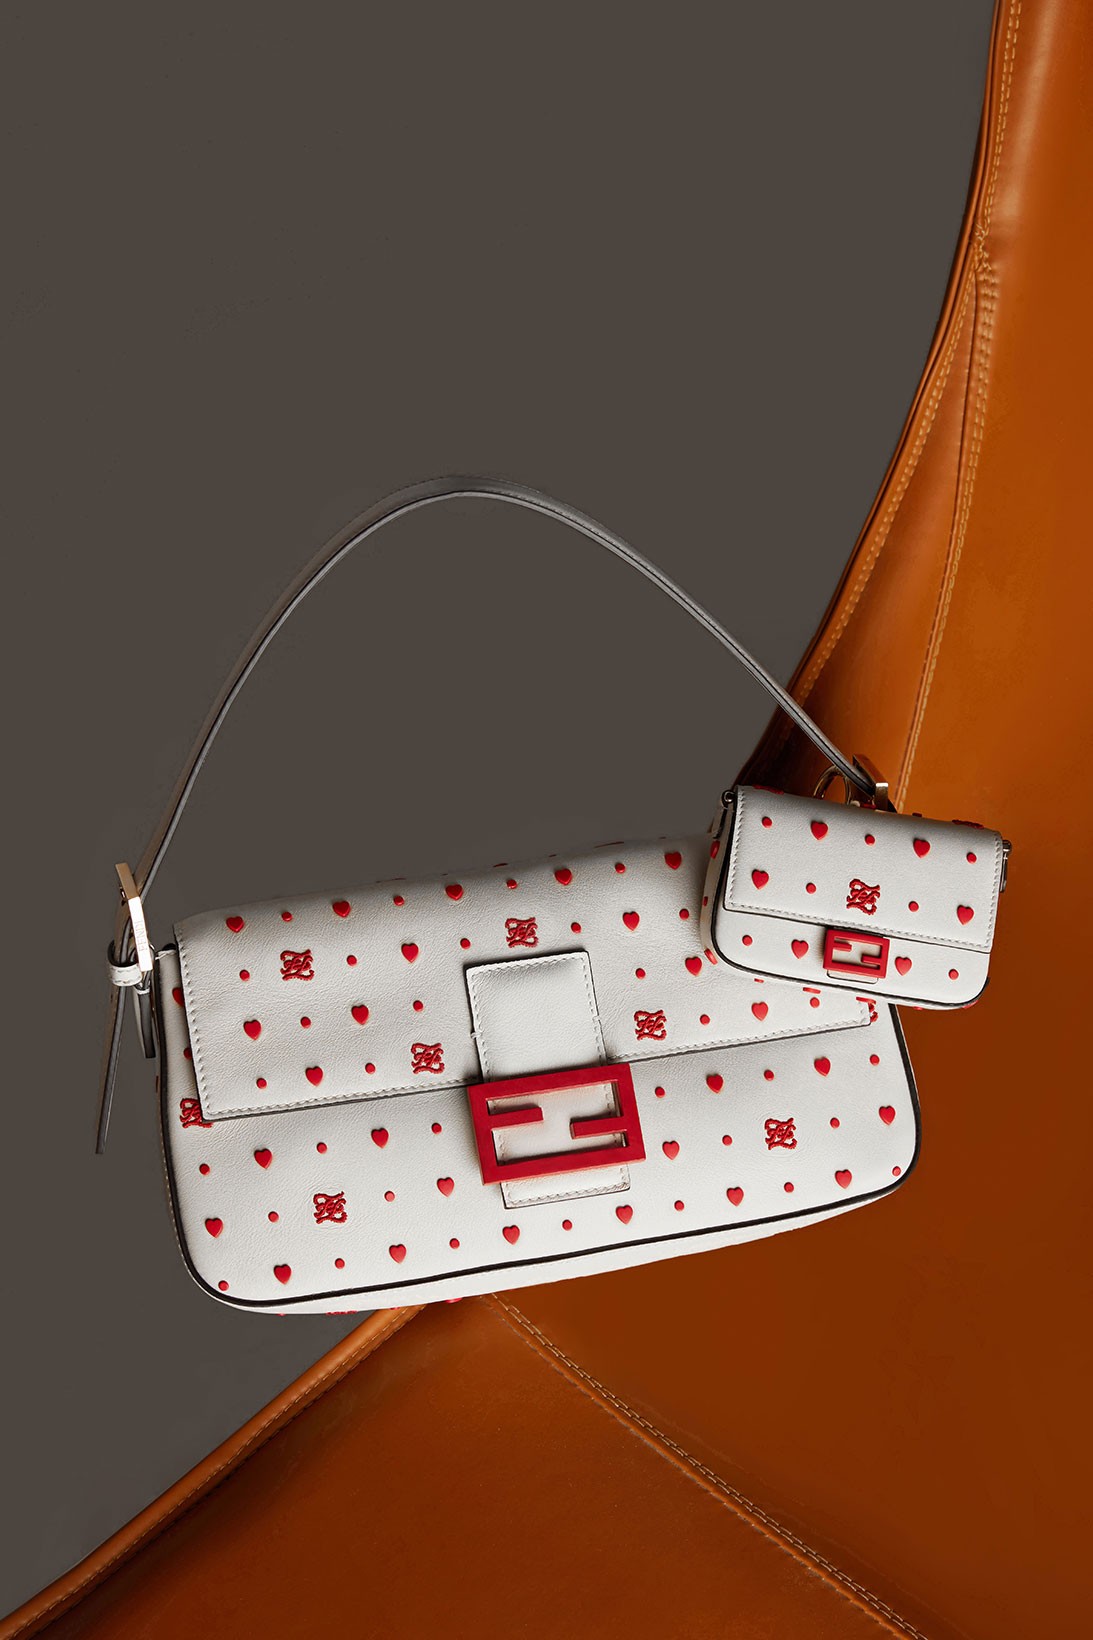 Fendi выпустил красно-белую коллекцию сумок в честь китайского Дня всех влюбленных (фото 2)